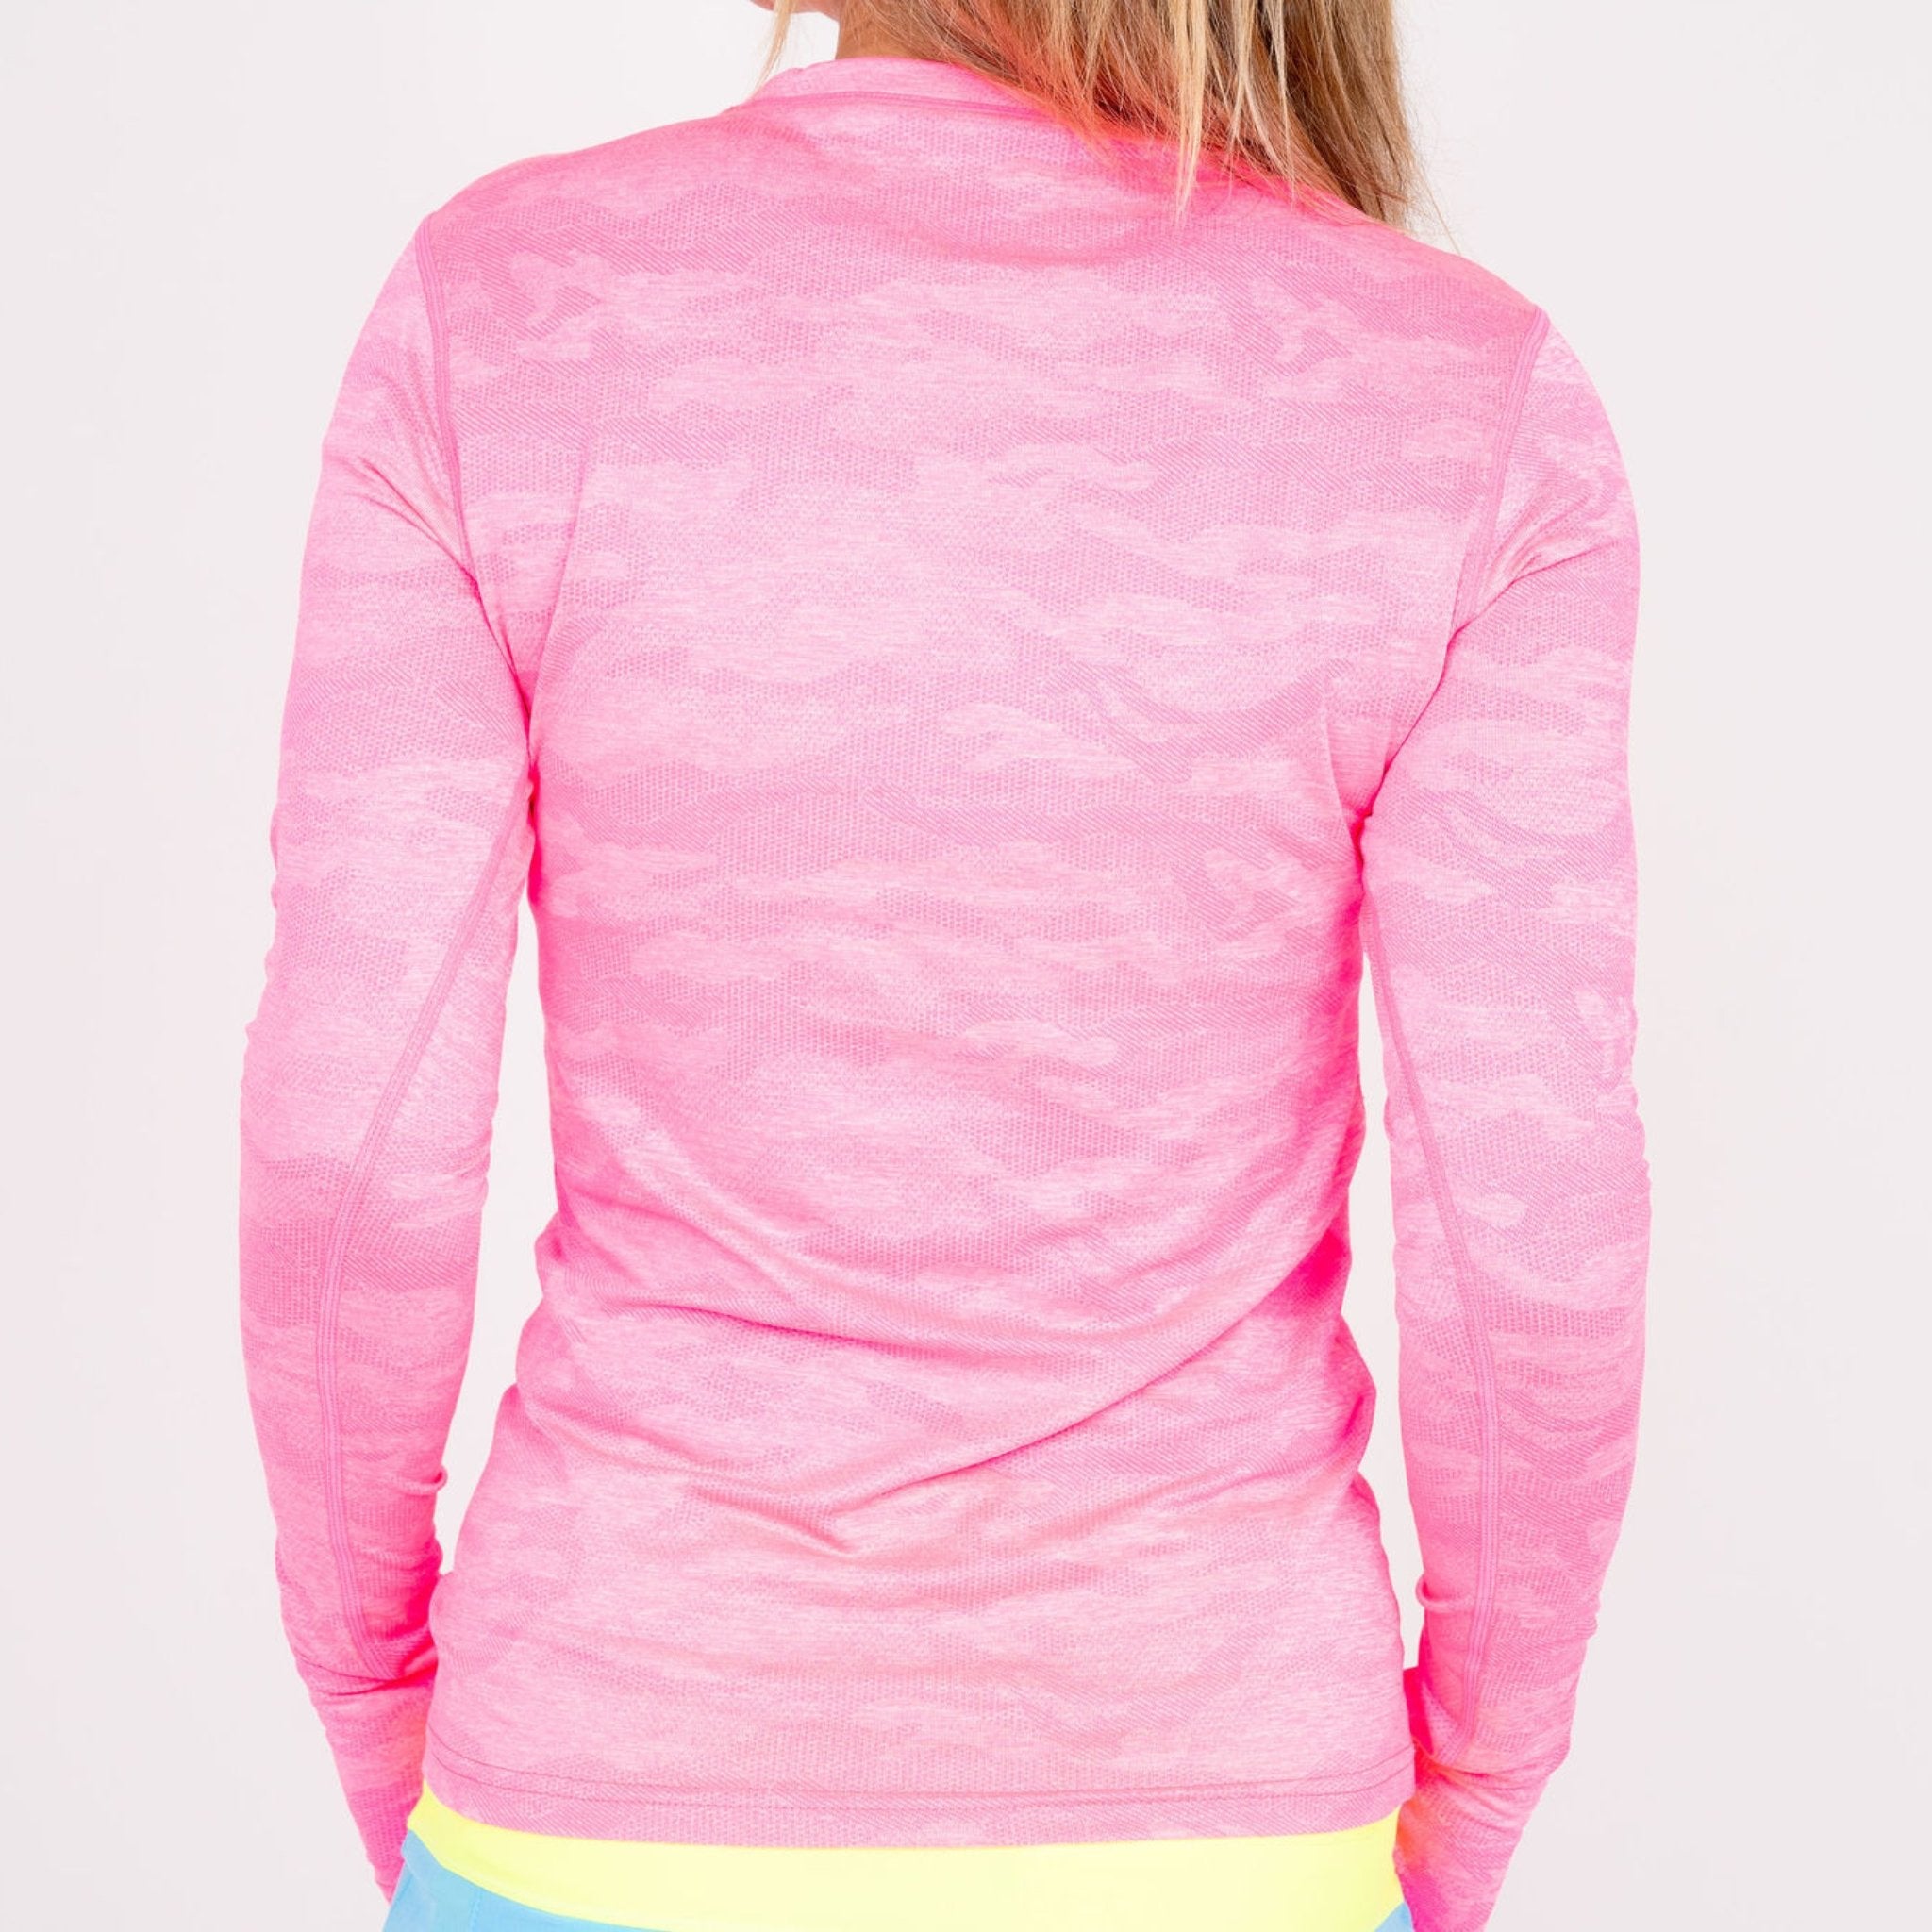 Jordan's Collarless Long Sleeve - Neon Pink Ghost Camo - Fairway Fittings